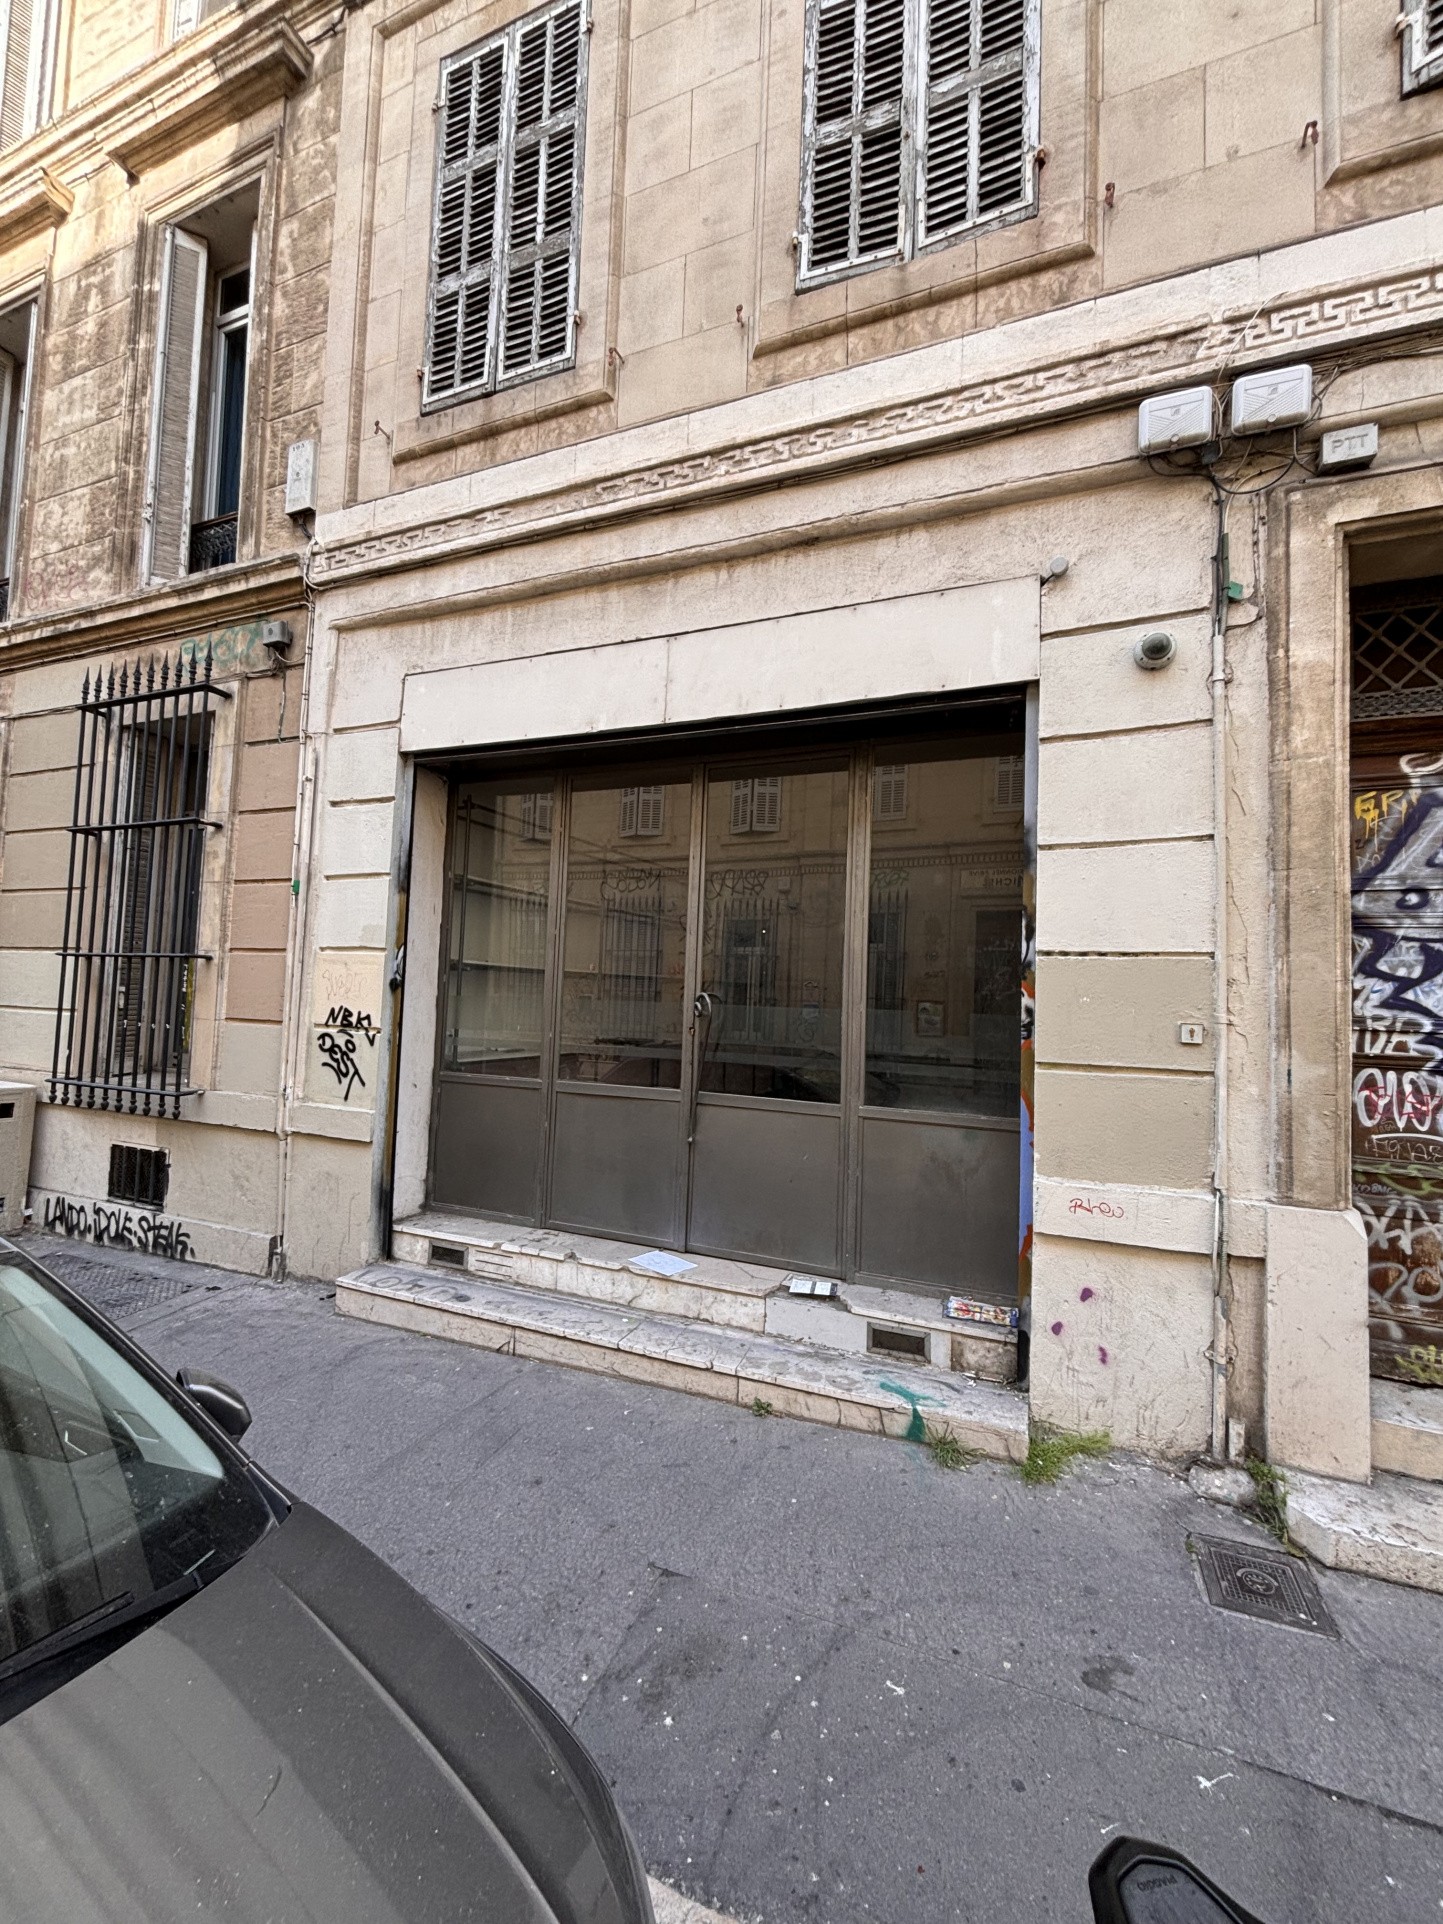 Vente Bureau / Commerce à Marseille 1er arrondissement 0 pièce